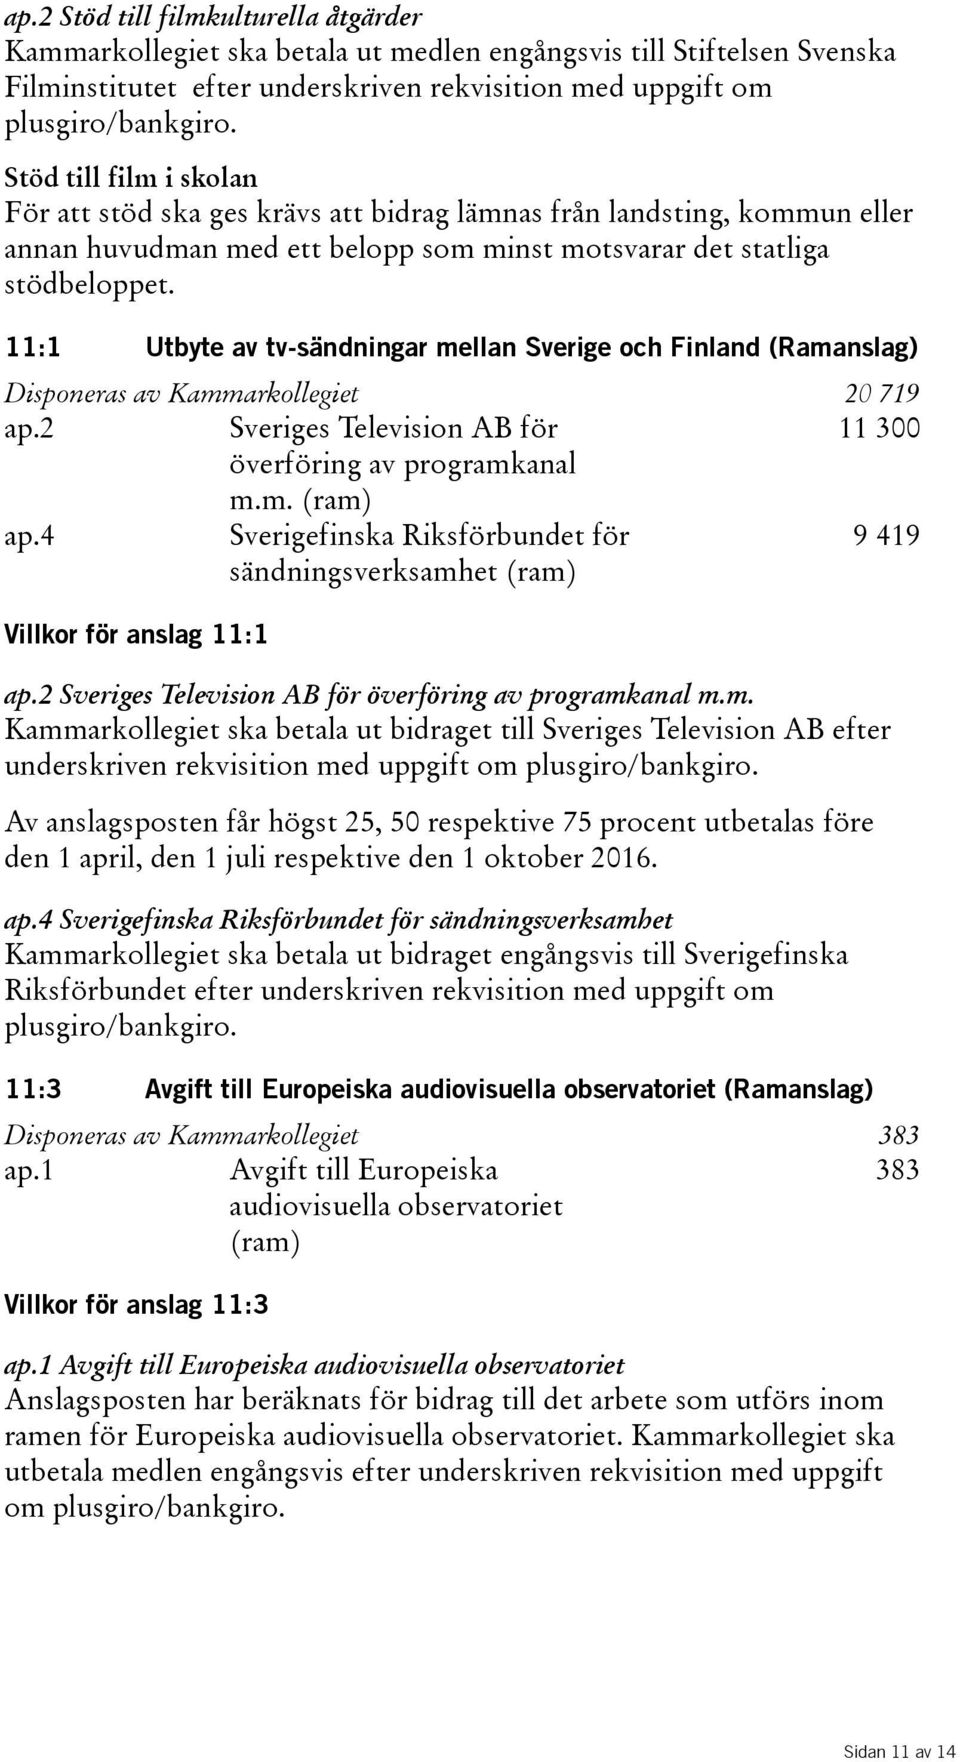 11:1 Utbyte av tv-sändningar mellan Sverige och Finland (Ramanslag) Disponeras av Kammarkollegiet 20 719 ap.2 Sveriges Television AB för 11300 överföring av programkanal m.m. ap.4 Sverigefinska Riksförbundet för sändningsverksamhet 9419 Villkor för anslag 11:1 ap.